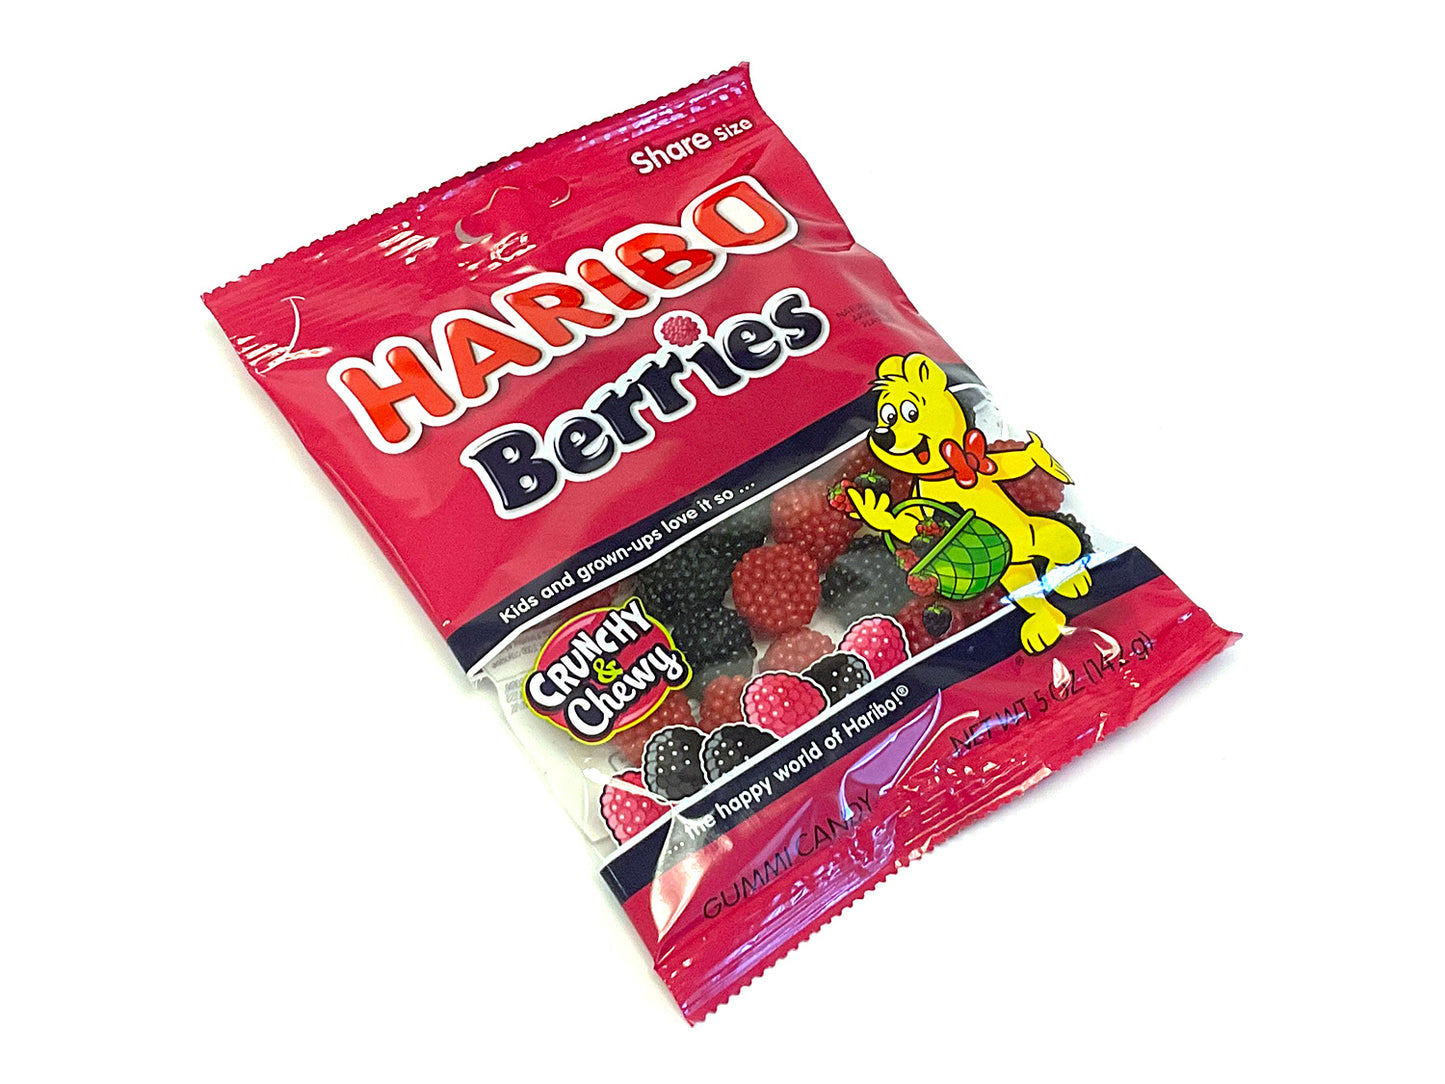 Raspberries and Blackberries - 5 oz bag